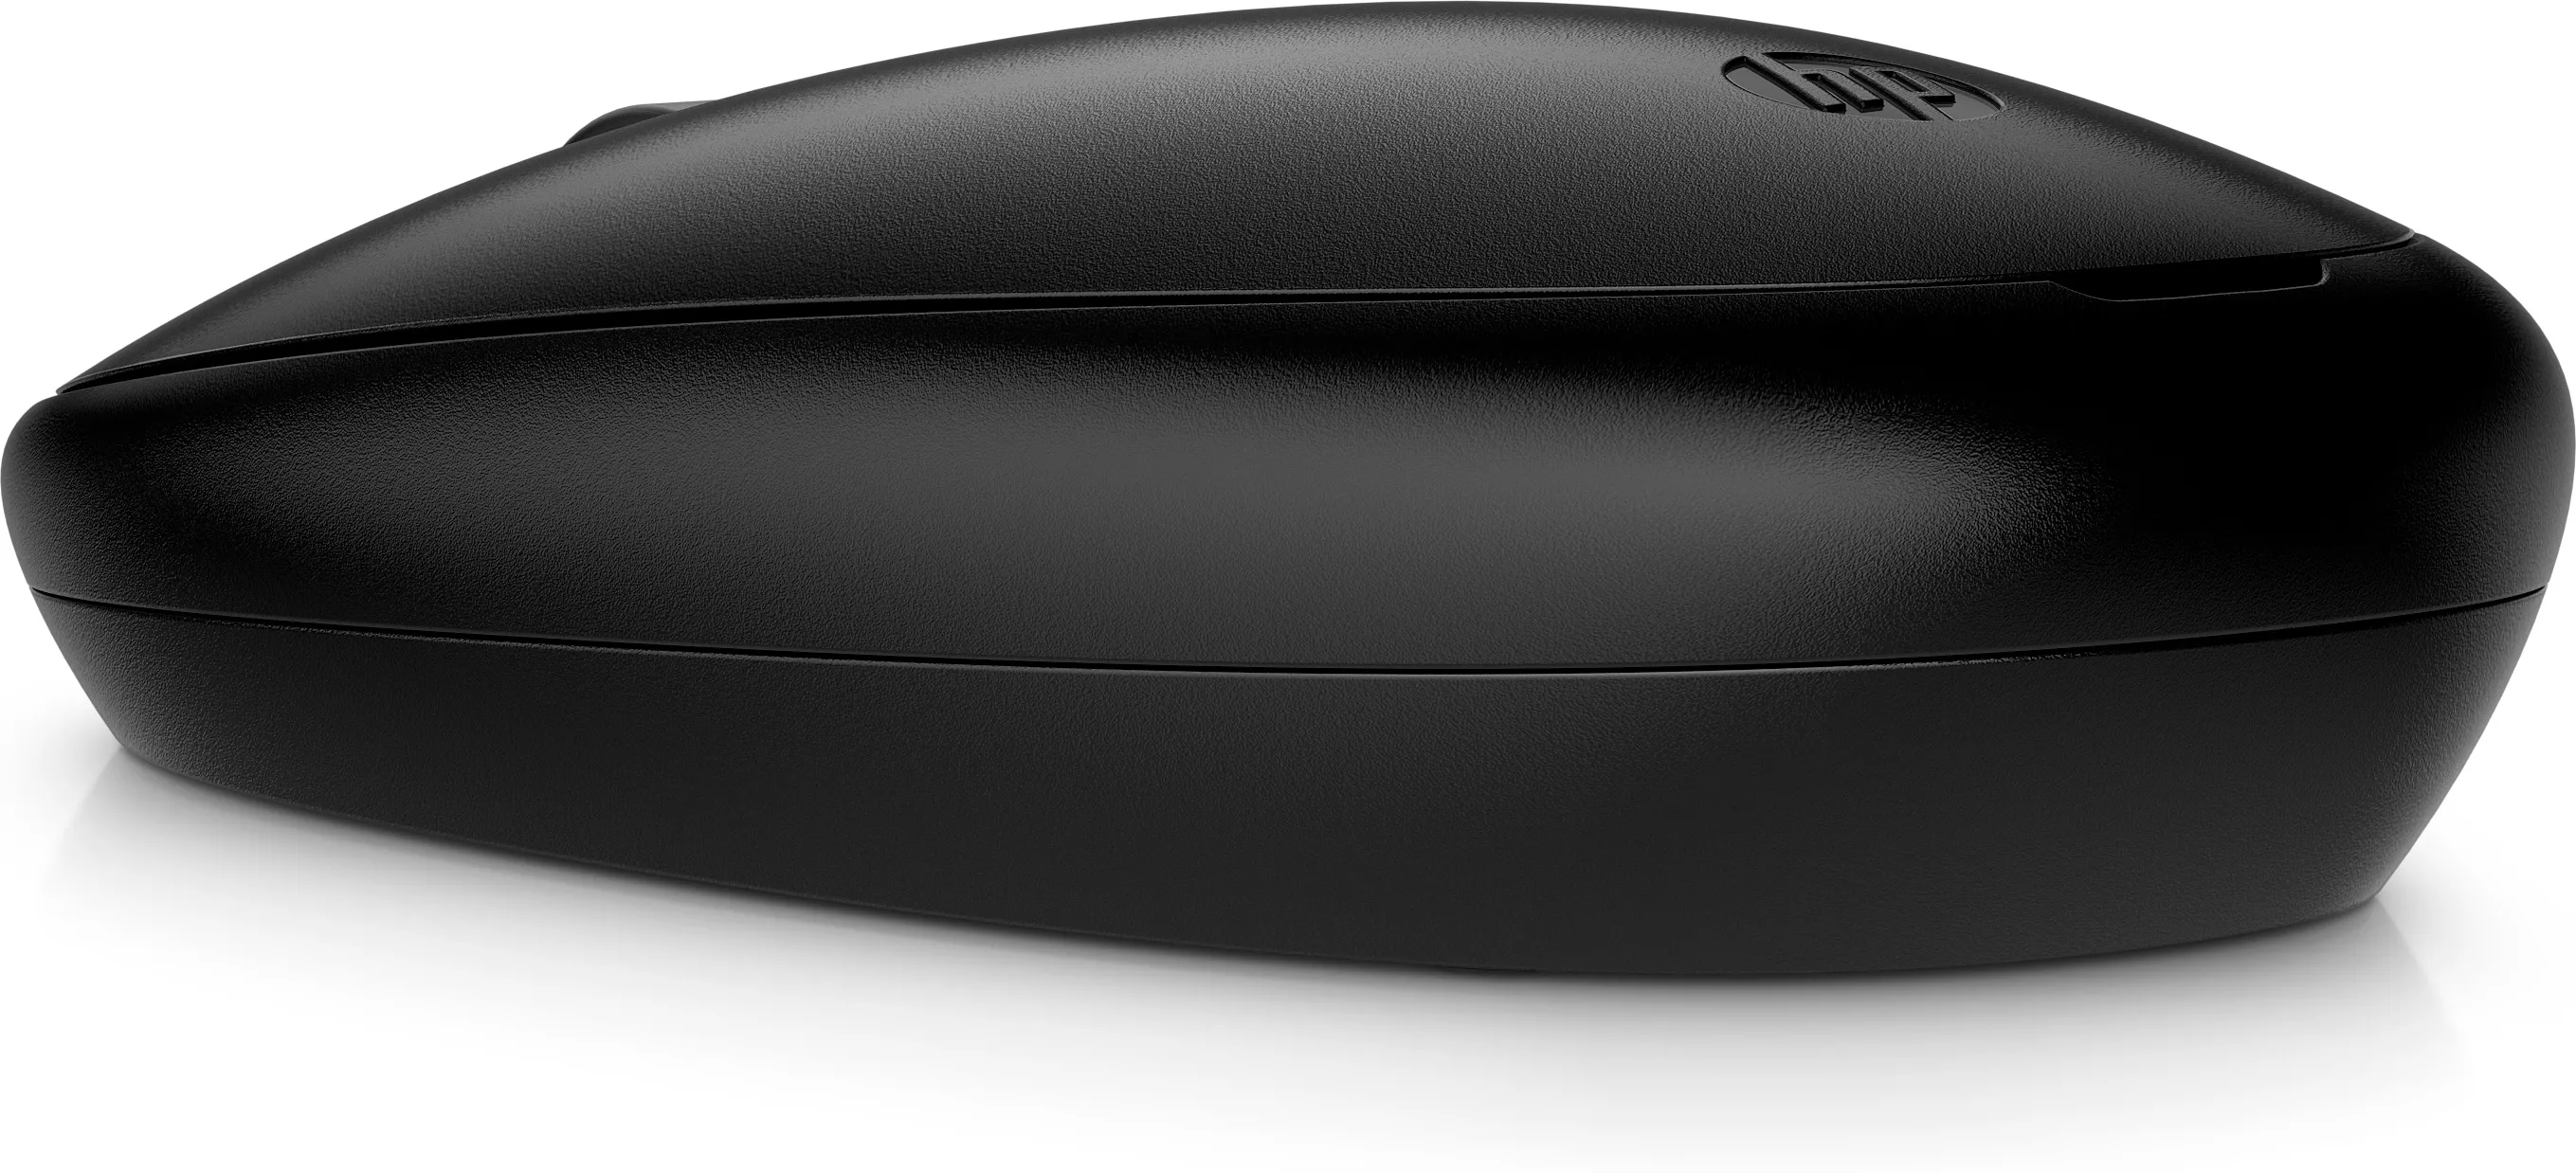 Achat HP 240 Mouse BLK sur hello RSE - visuel 5